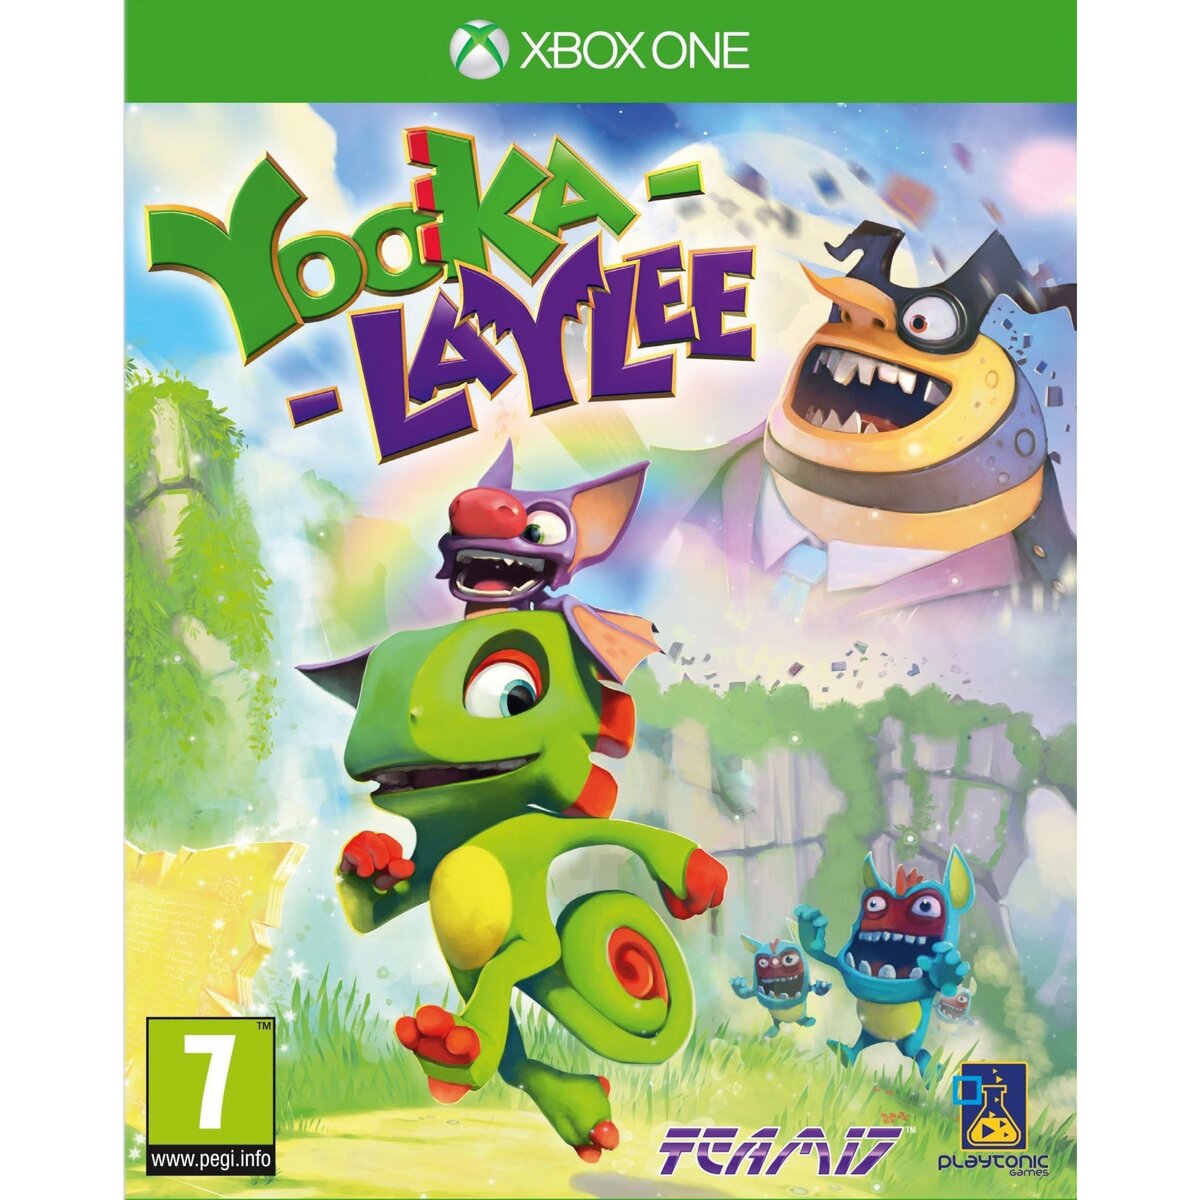 Yooka-Laylee Xbox One